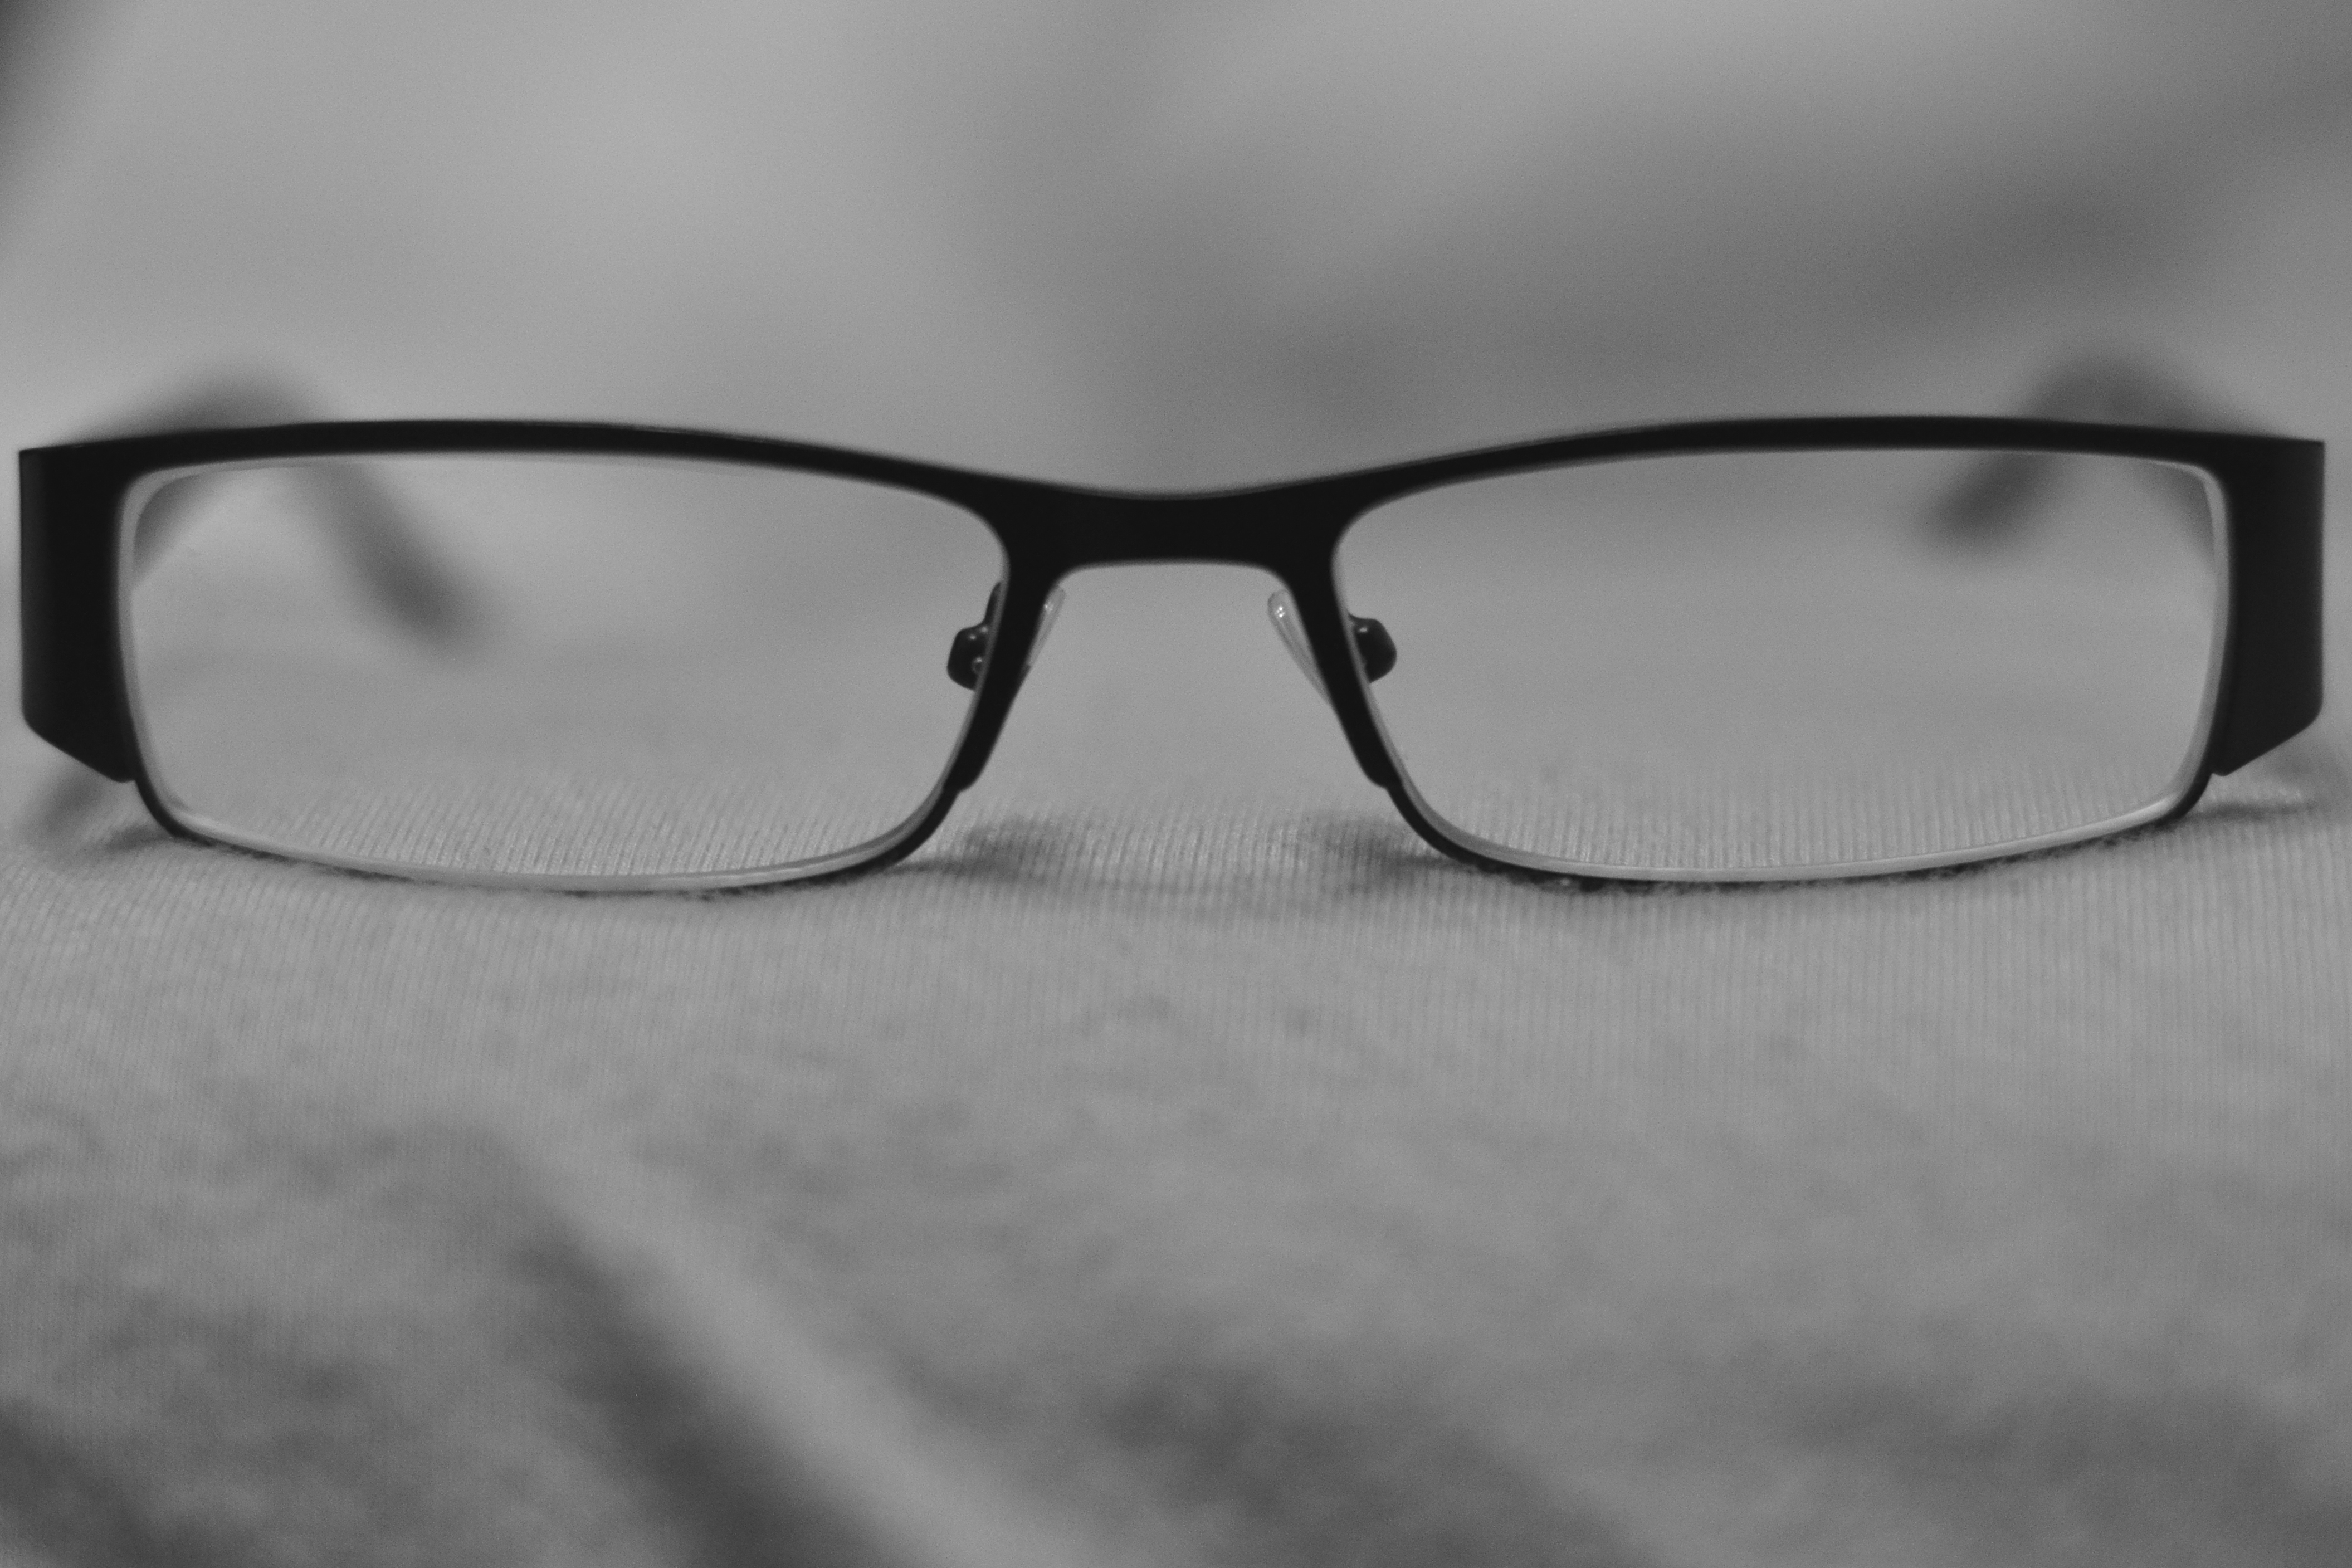 Glasses1